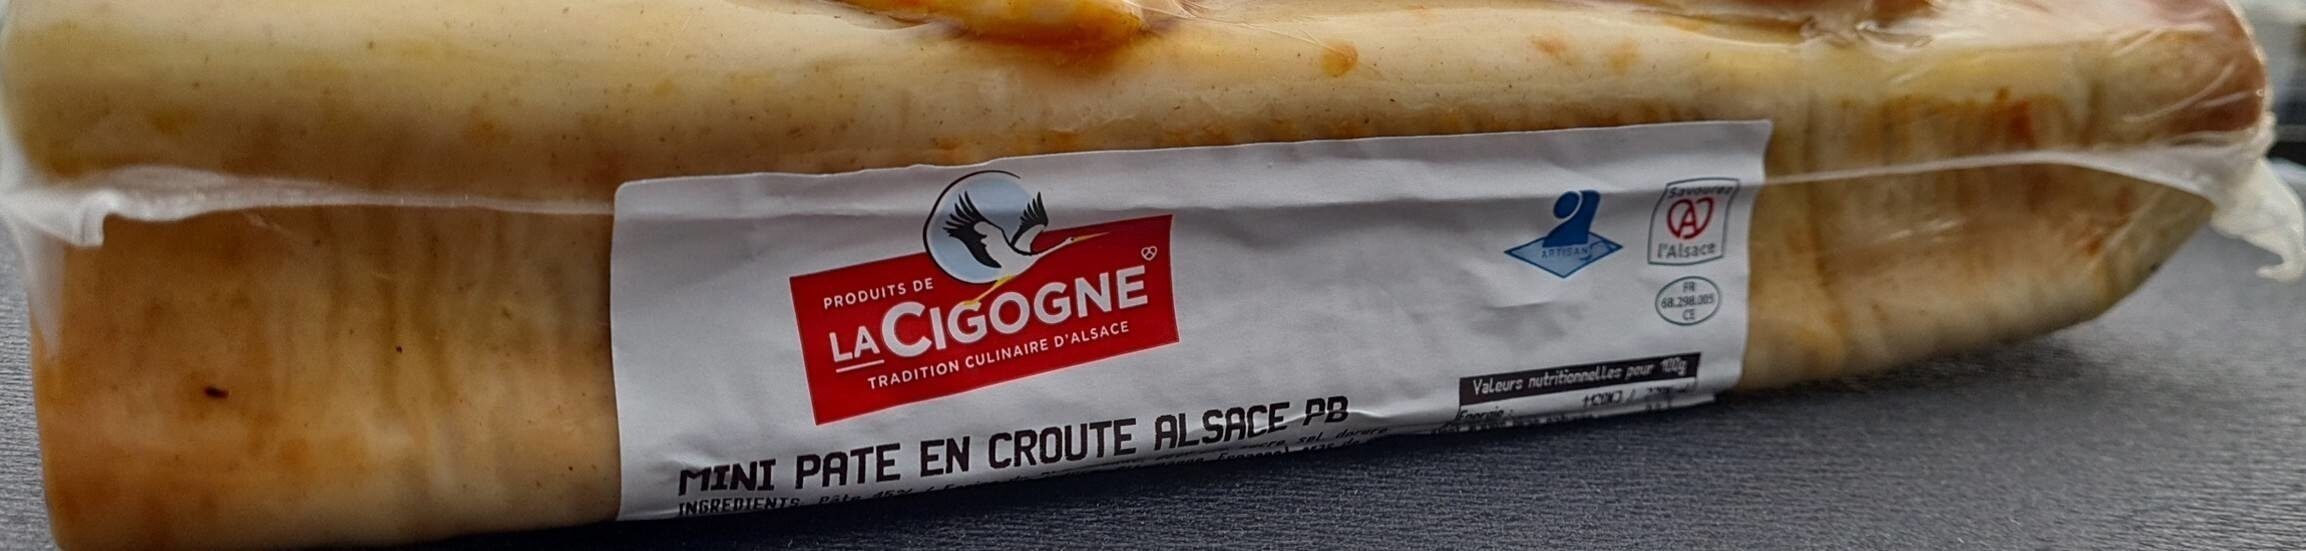 Mini pâté en croûte Alsace PB - Product - fr